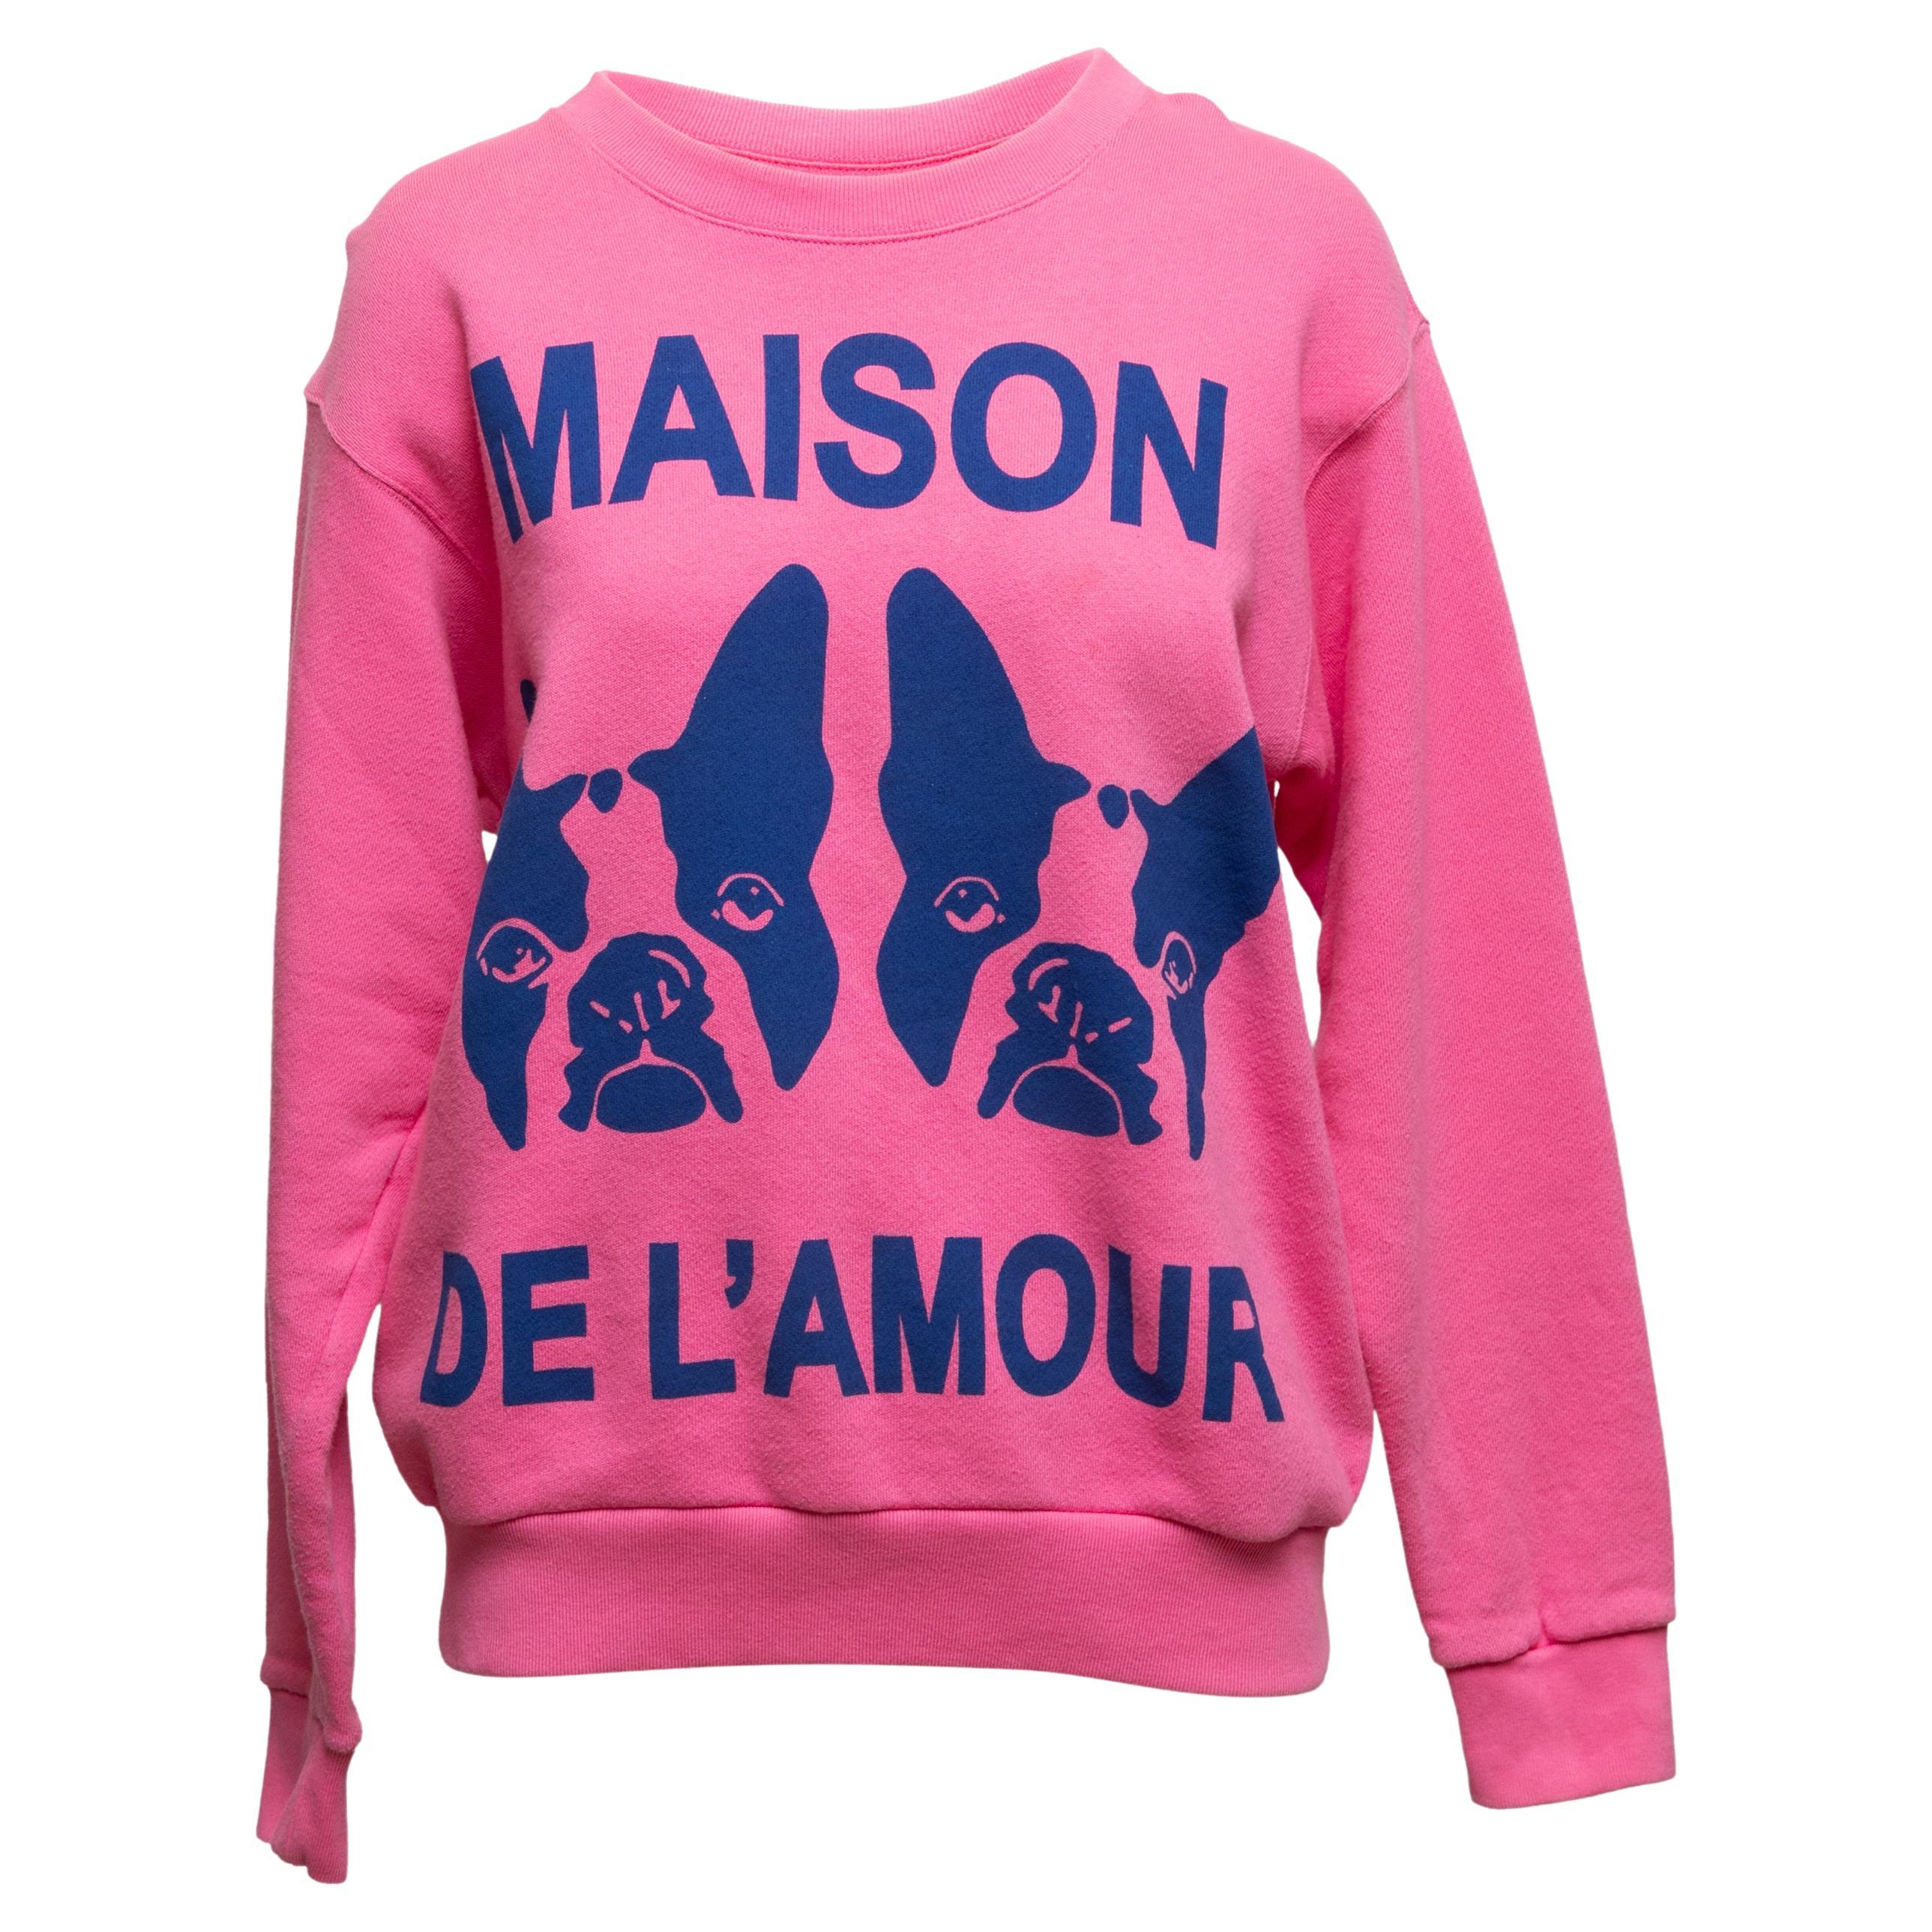 Gucci Maison De L'Amour Sweatshirt in Rosa & Marineblau Größe US XS